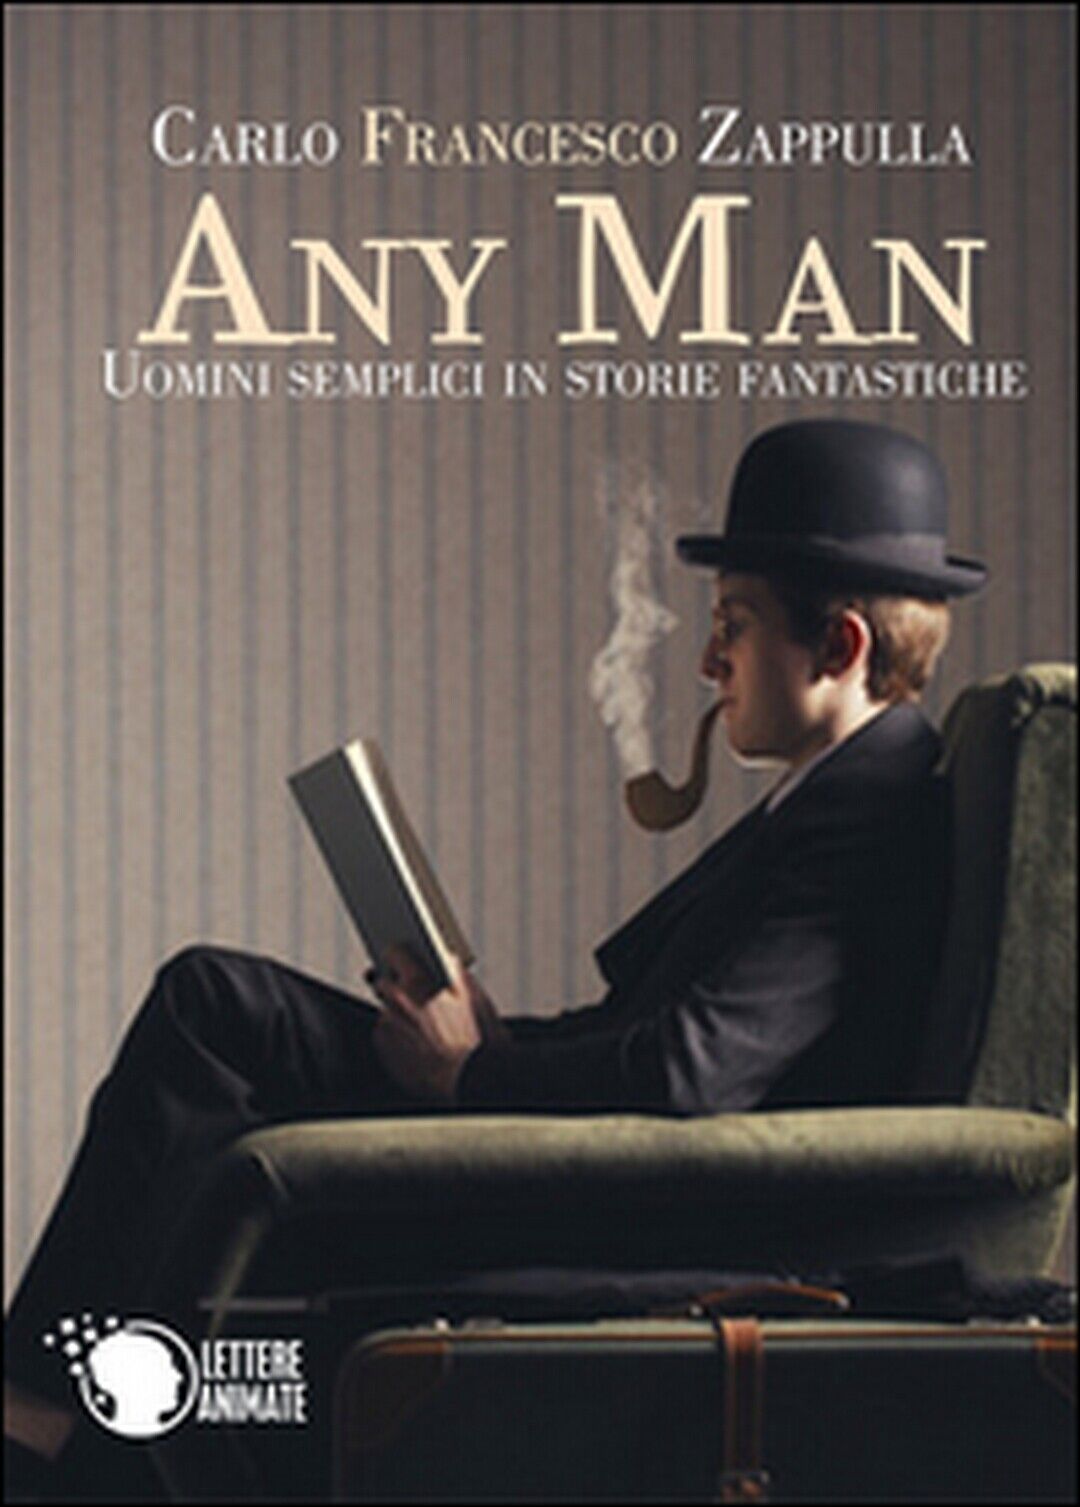 Any Man, uomini semplici in storie fantastiche  di Carlo F. Zappulla,  2016